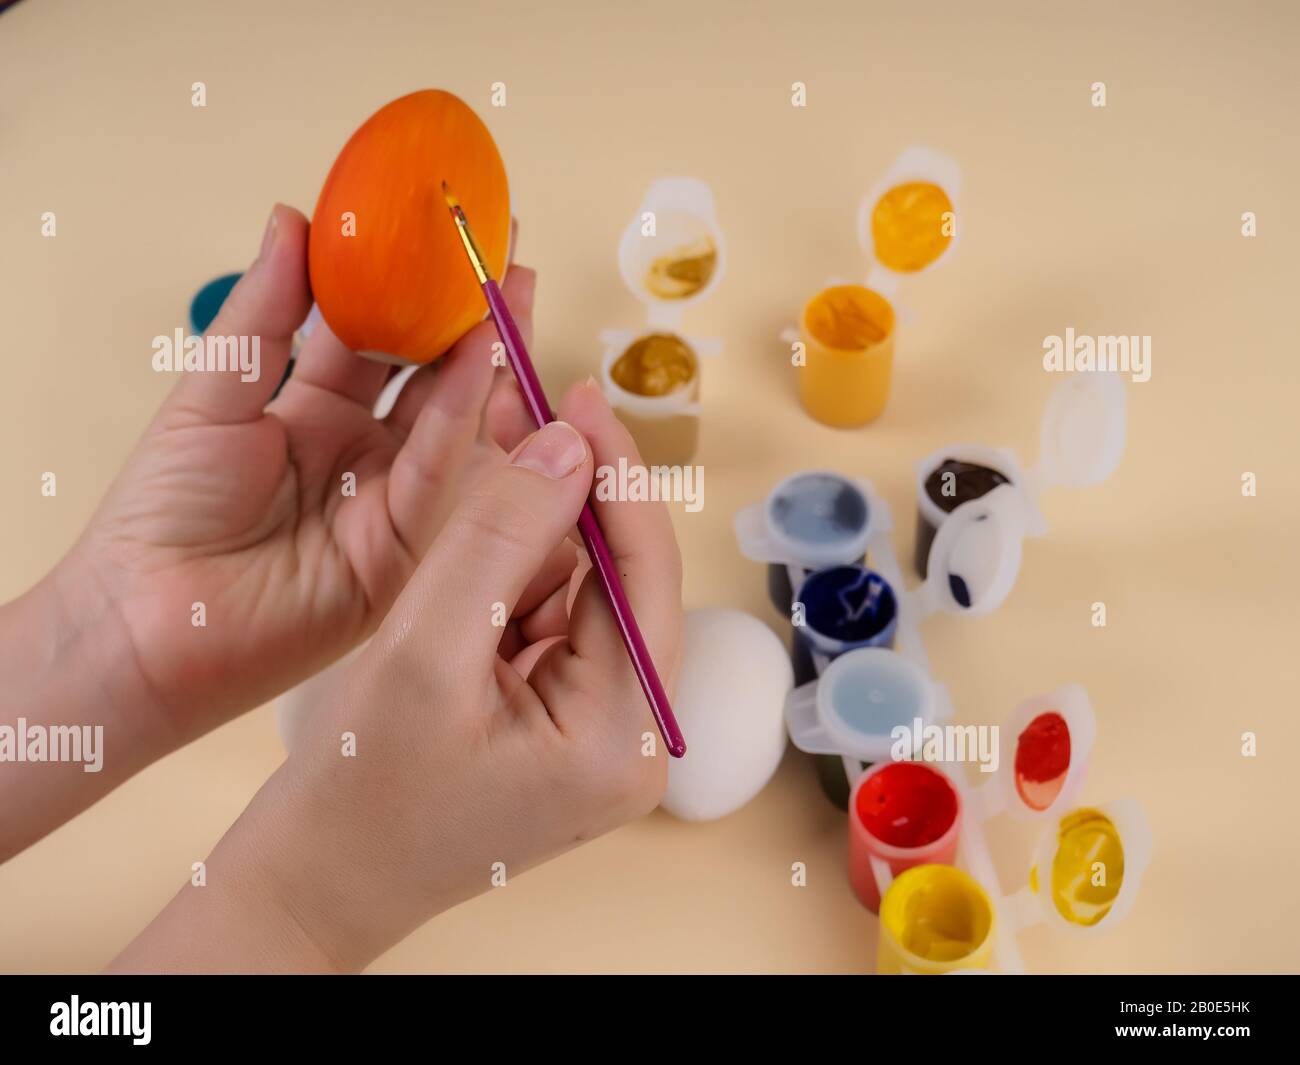 pasqua, famiglia, vacanza e concetto - chiudere le uova da colorare per pasqua. Foto Stock